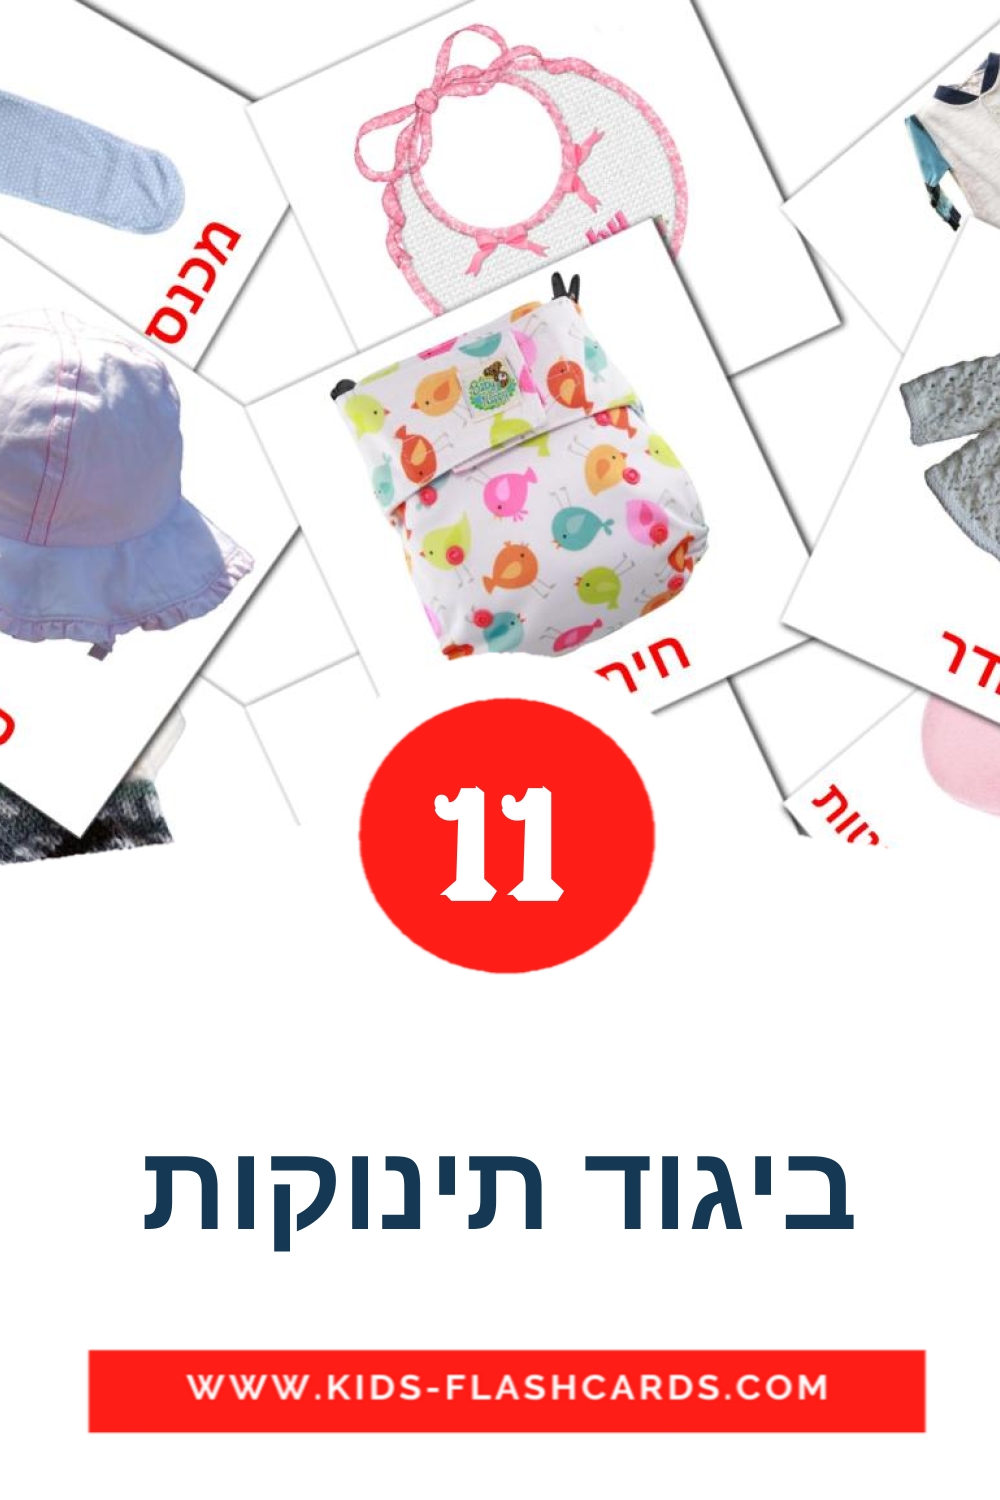 11 Cartões com Imagens de ביגוד תינוקות para Jardim de Infância em hebraico